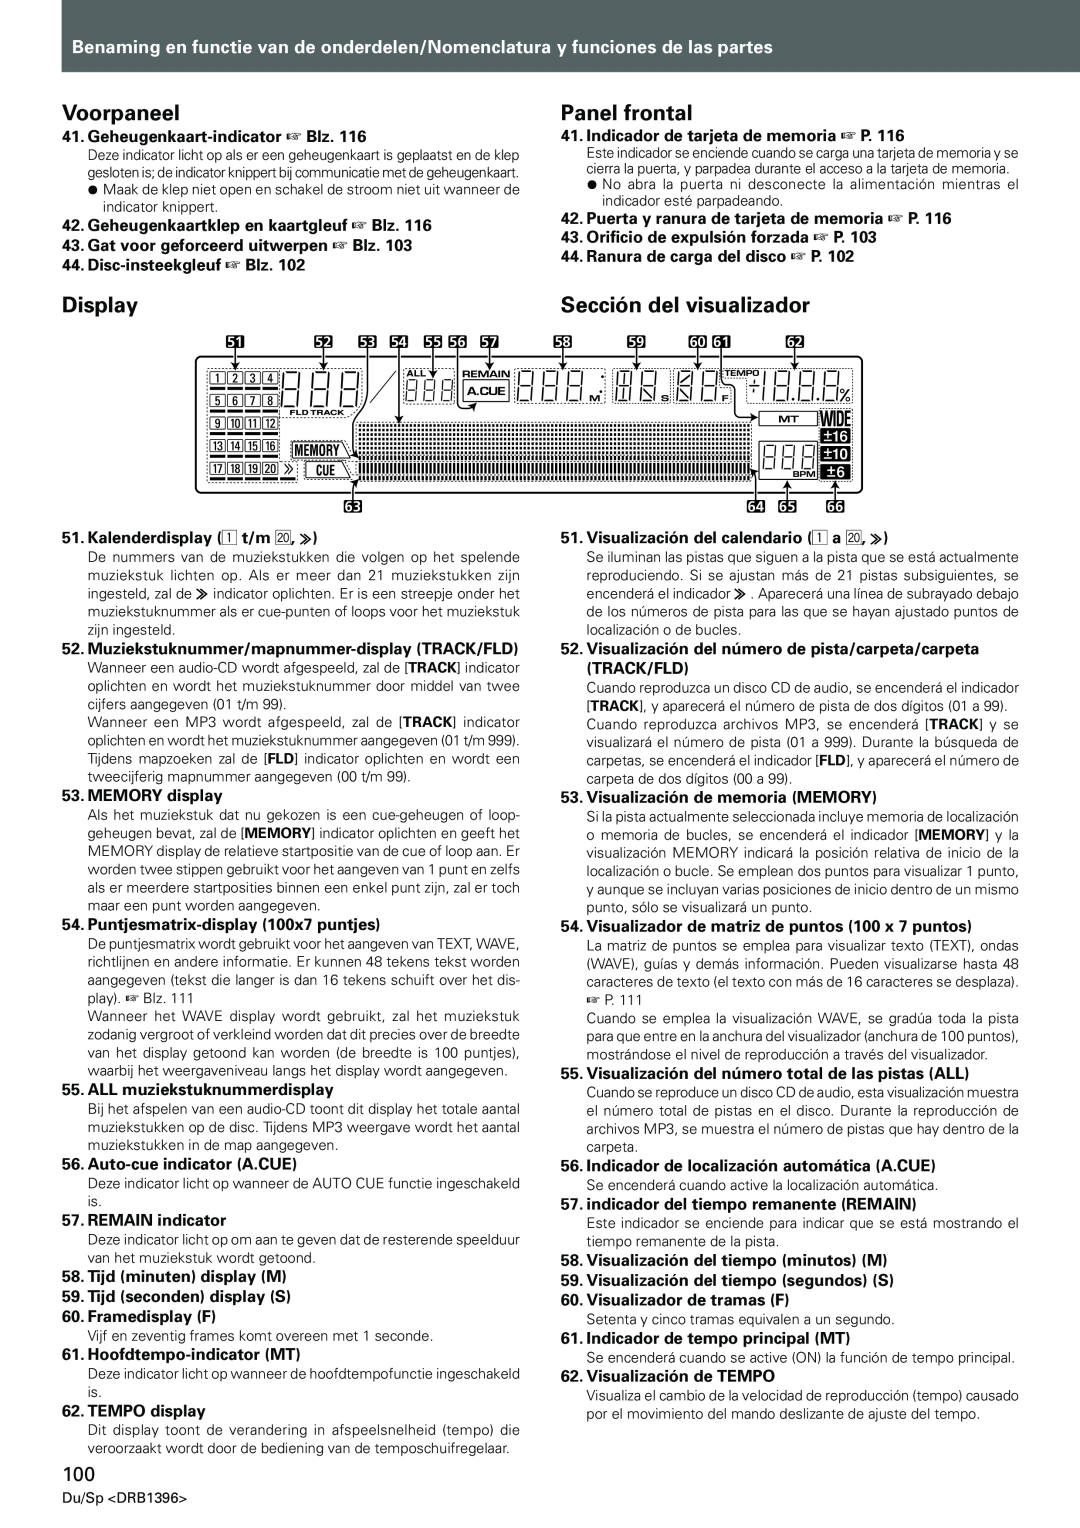 Pioneer CDJ-1000MK3 manual Voorpaneel, Panel frontal, Sección del visualizador, Display 